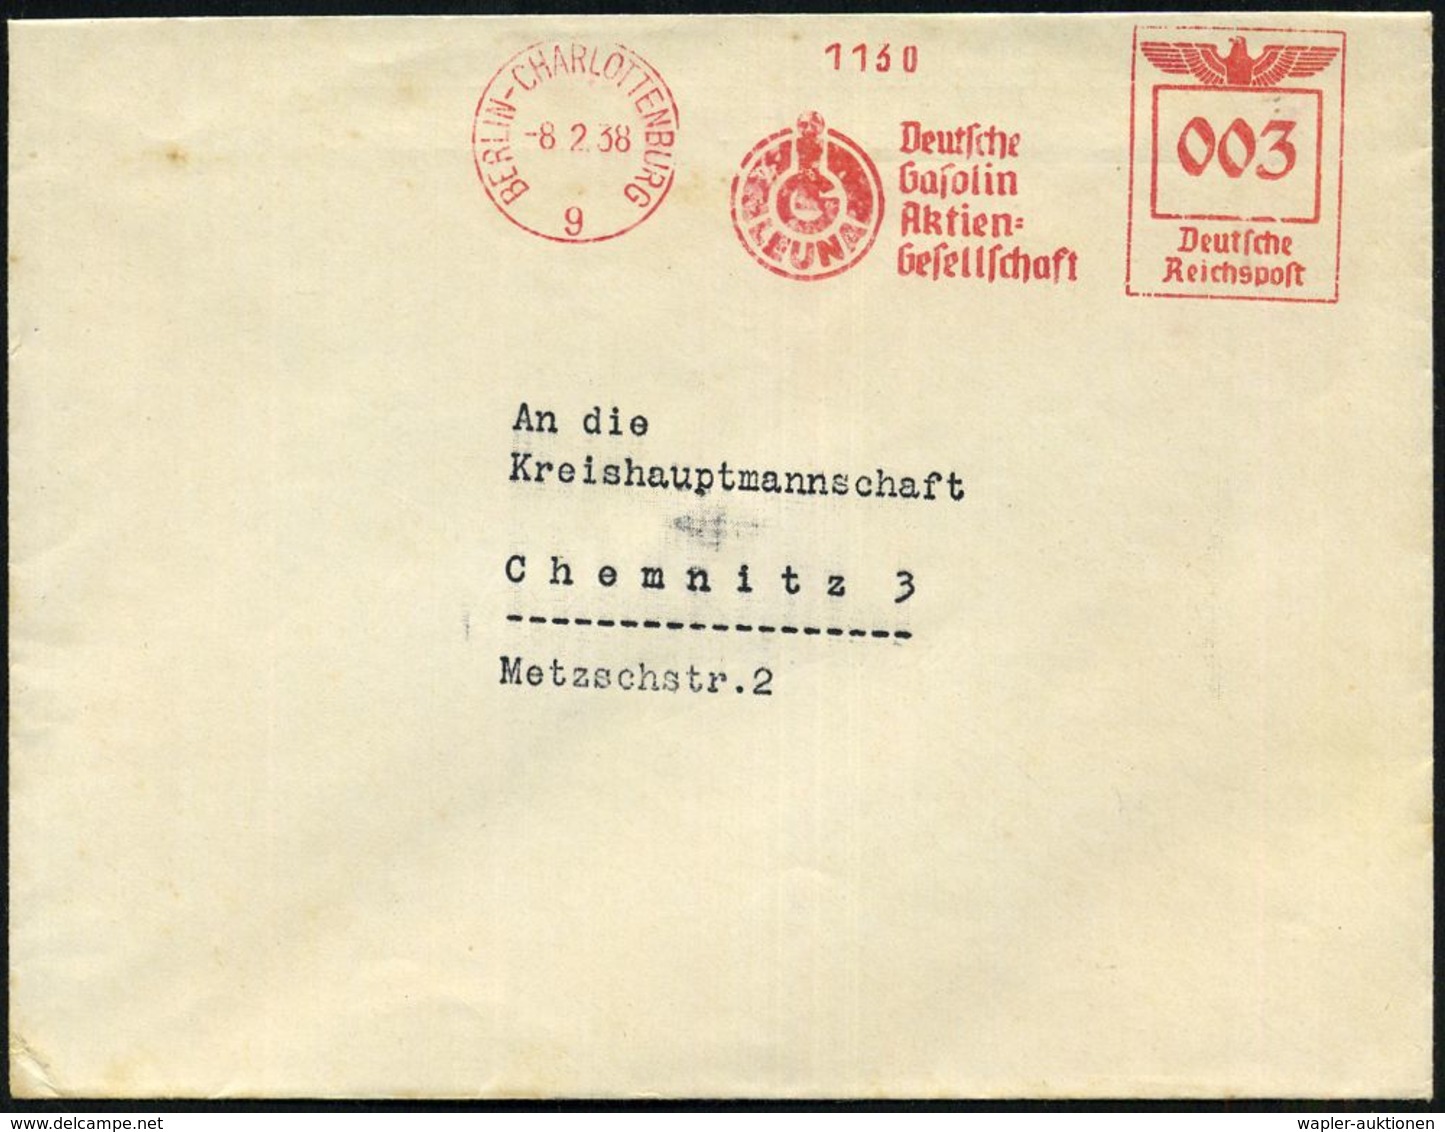 BERLIN-CHARLOTTENBURG/ 9/ IG/ LEUNA/ Deutsche/ Gasolin/ AG 1938 (8.2.) AFS = I.G.-Logo "LEUNA" , Rs. Abs.-Vordr.: DEUTSC - Chemistry